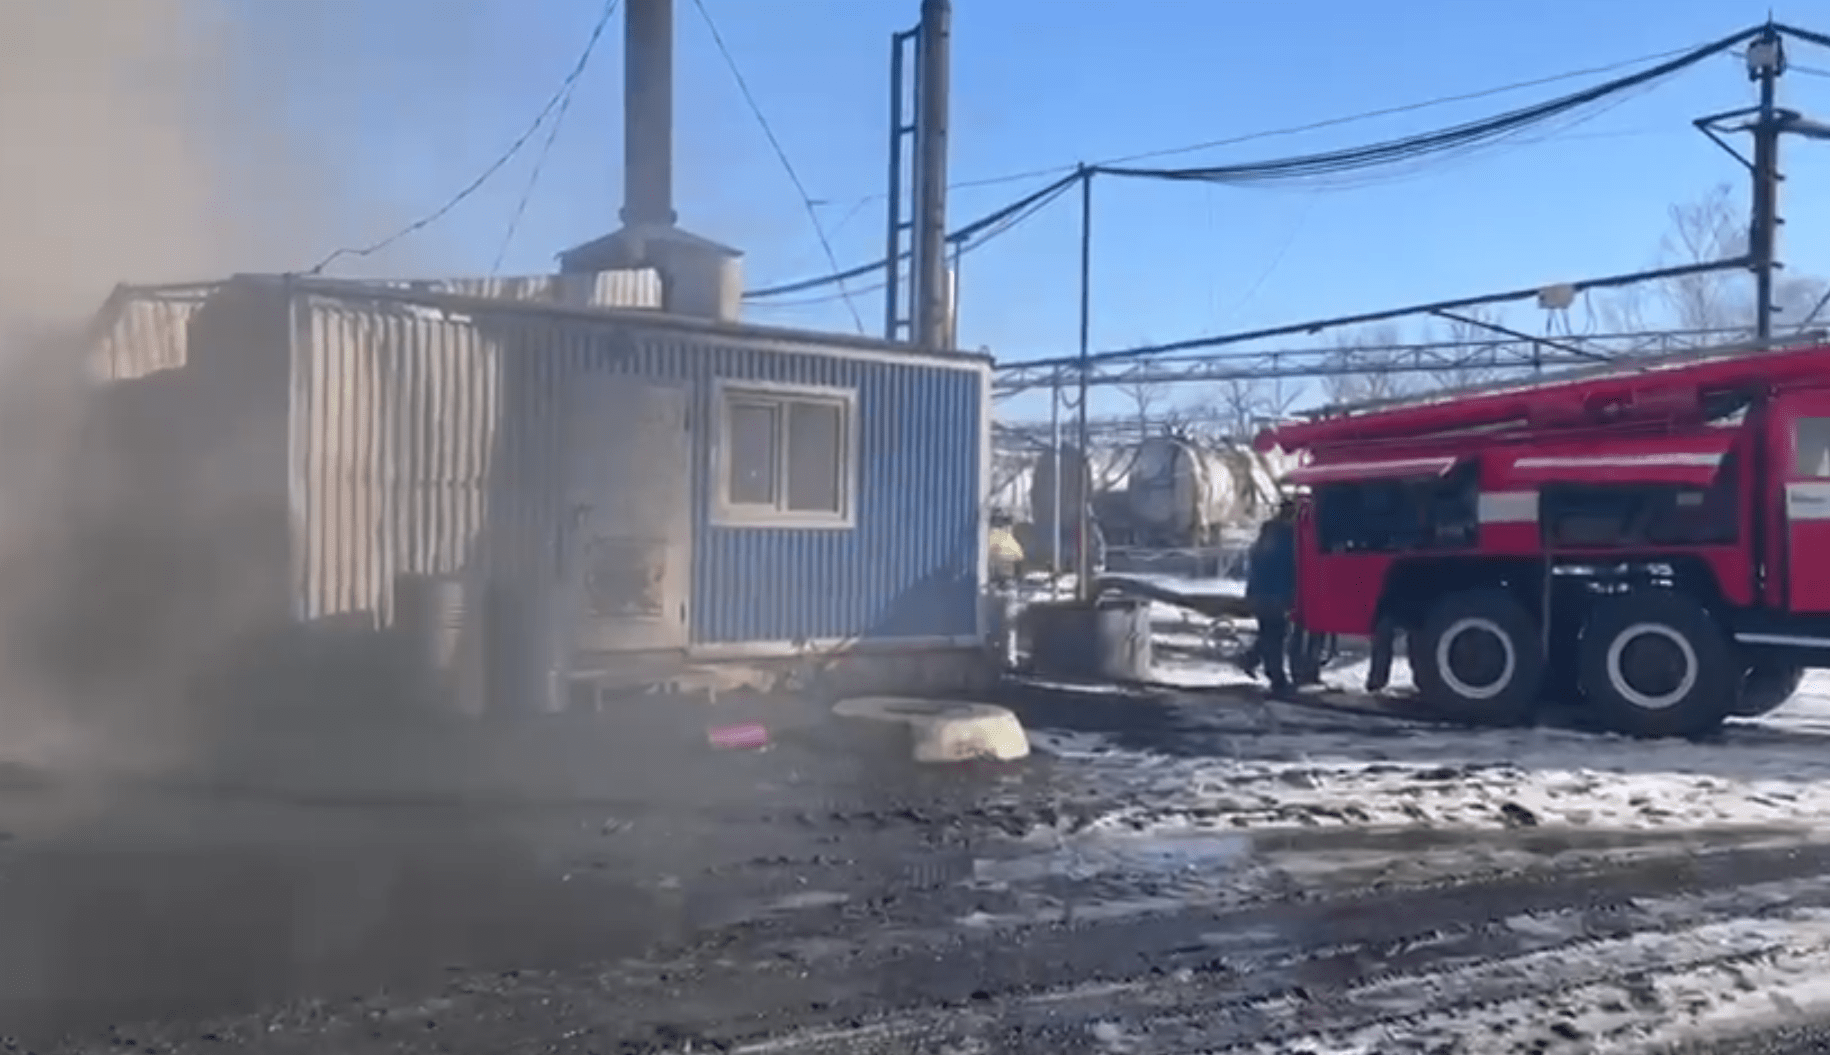 Завод нефтепродуктов загорелся в Ростовской области